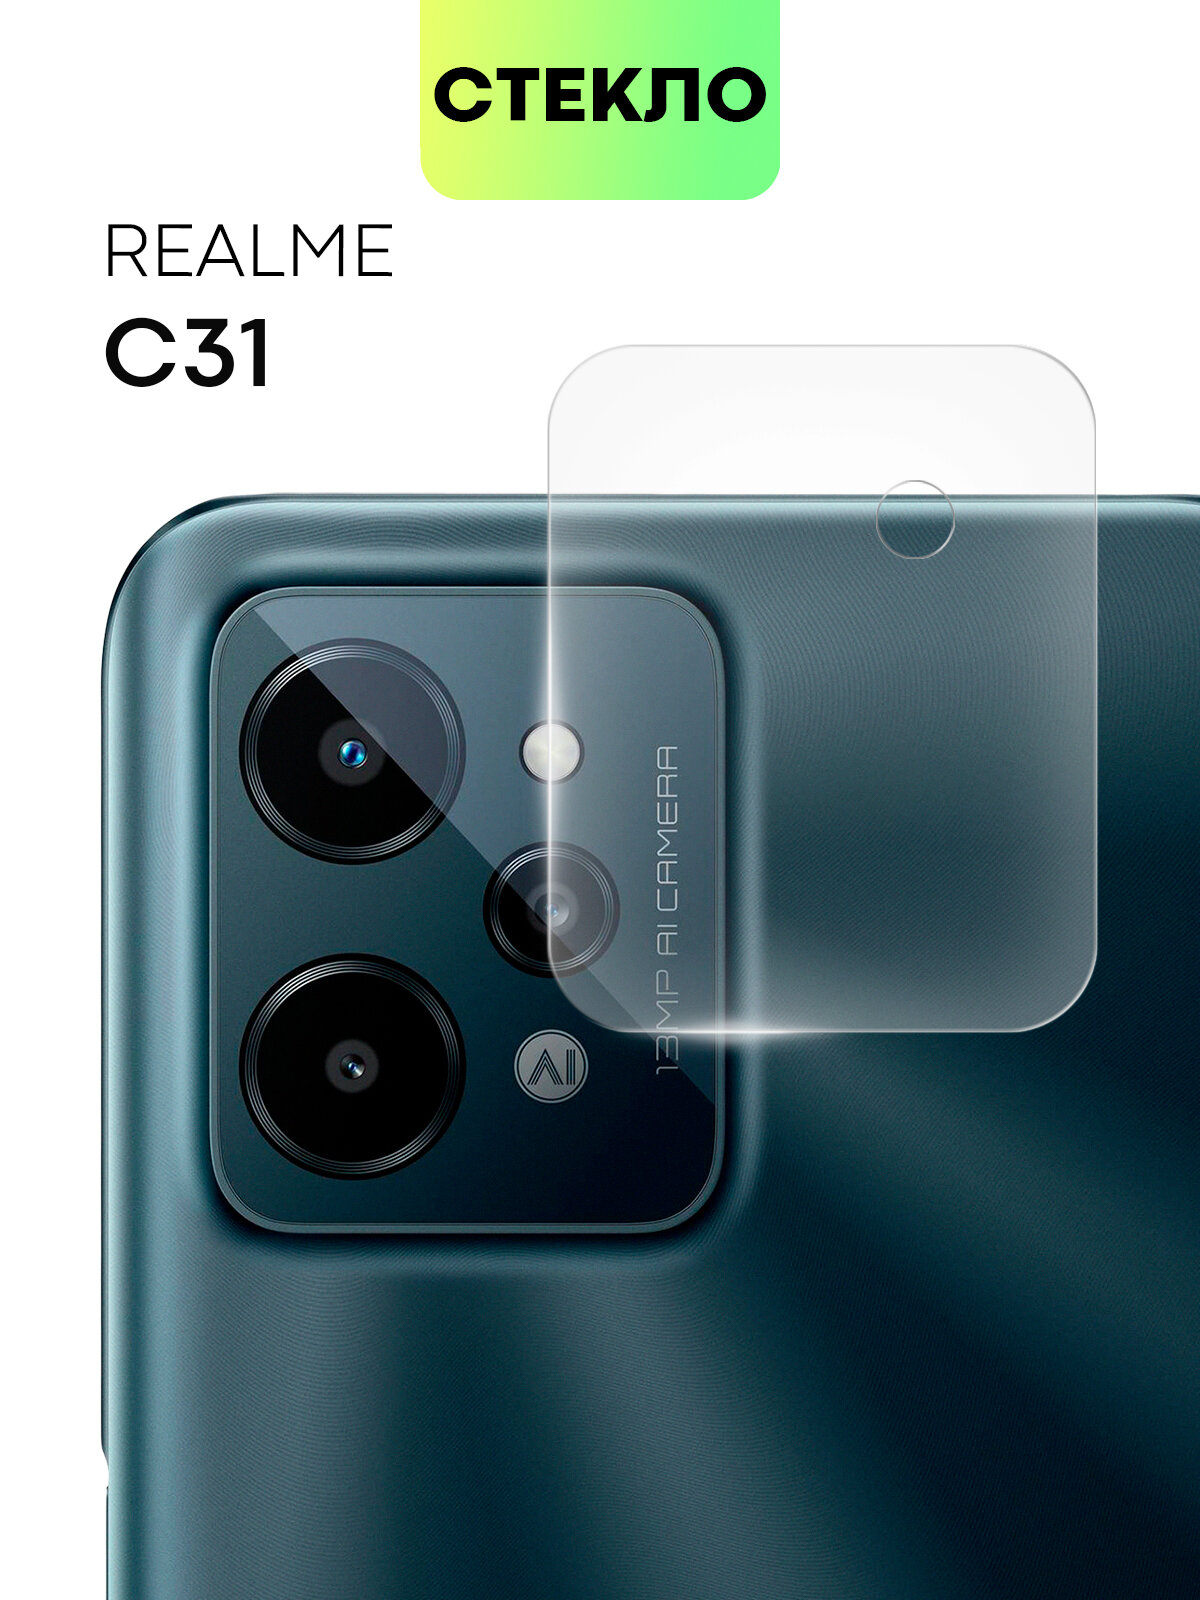 Стекло на камеру телефона Realme C31 (Реалми С31 Ц31) защитное стекло для защиты модуля камер прозрачное BROSCORP